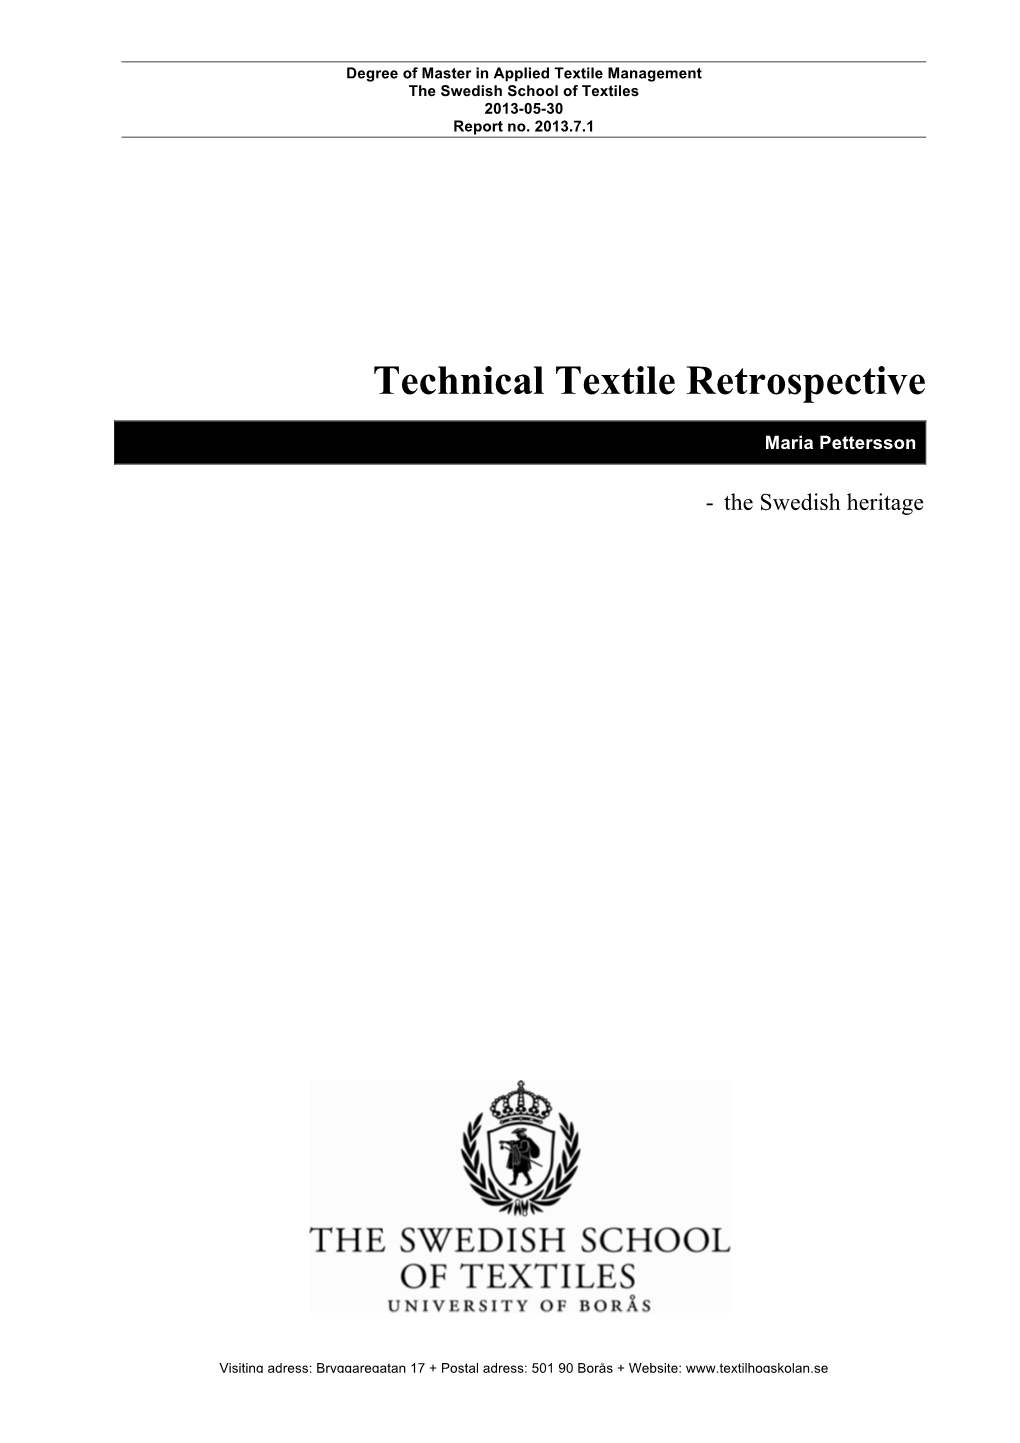 Technical Textile Retrospective